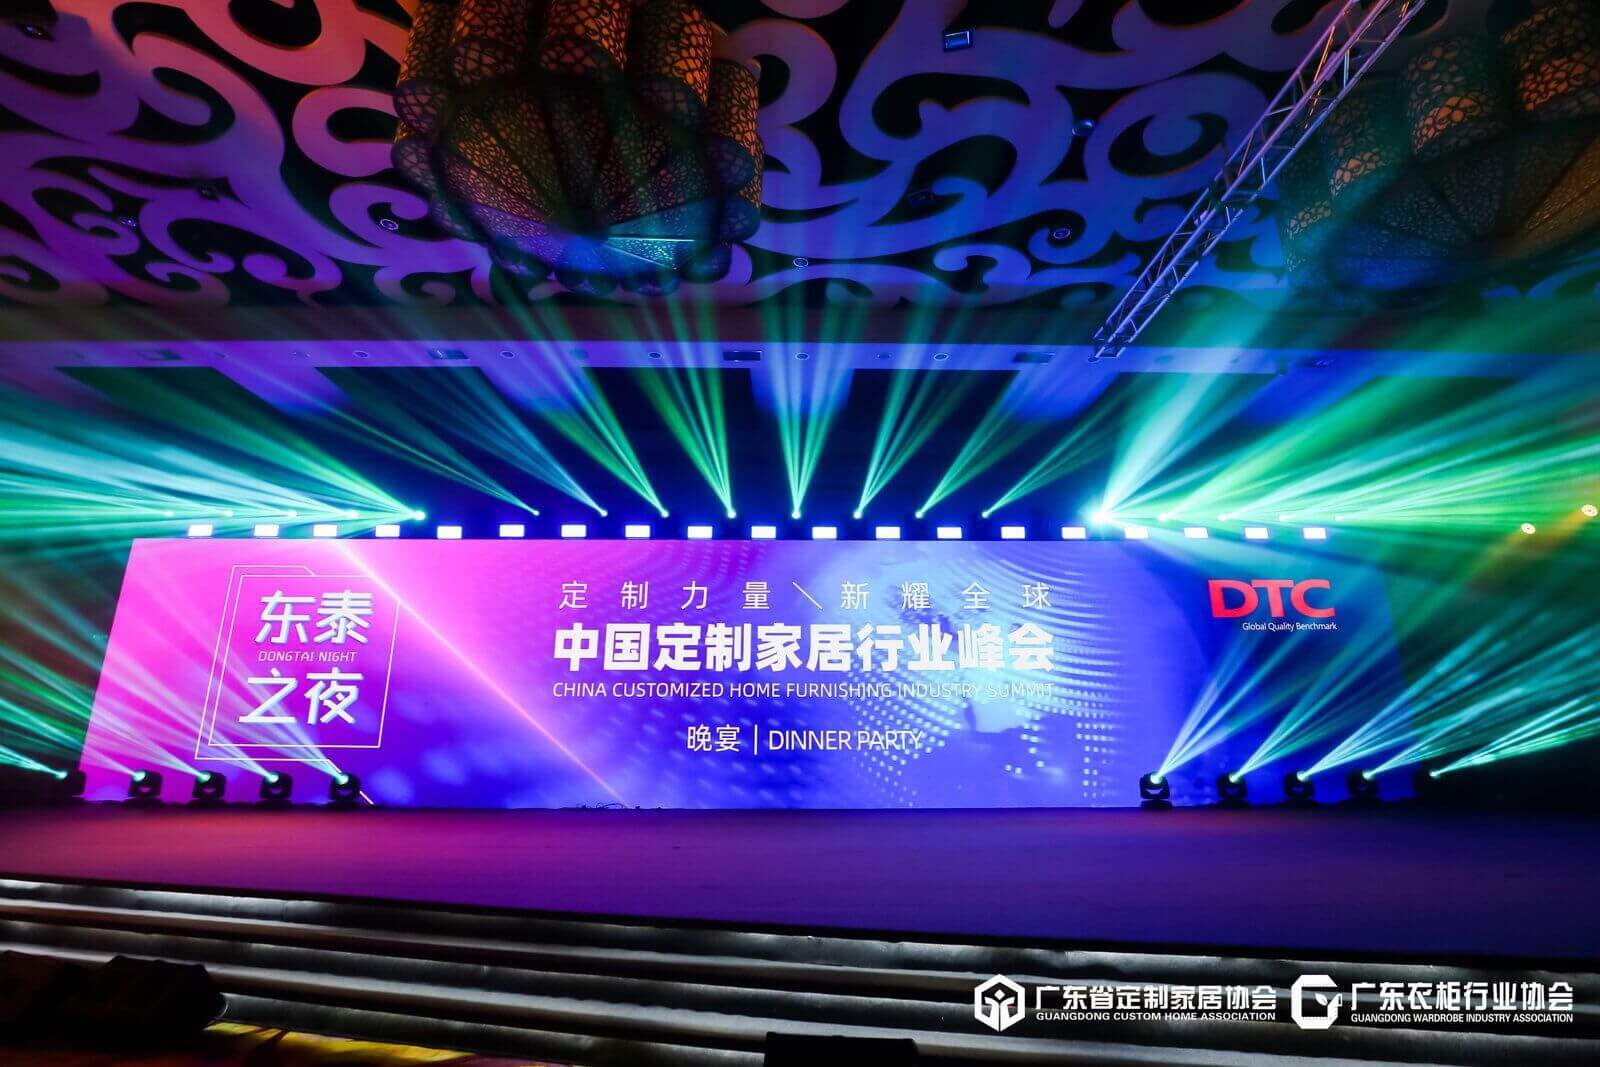 DTC Night — саммит производителей мебели для дома по индивидуальным заказам в Китае.